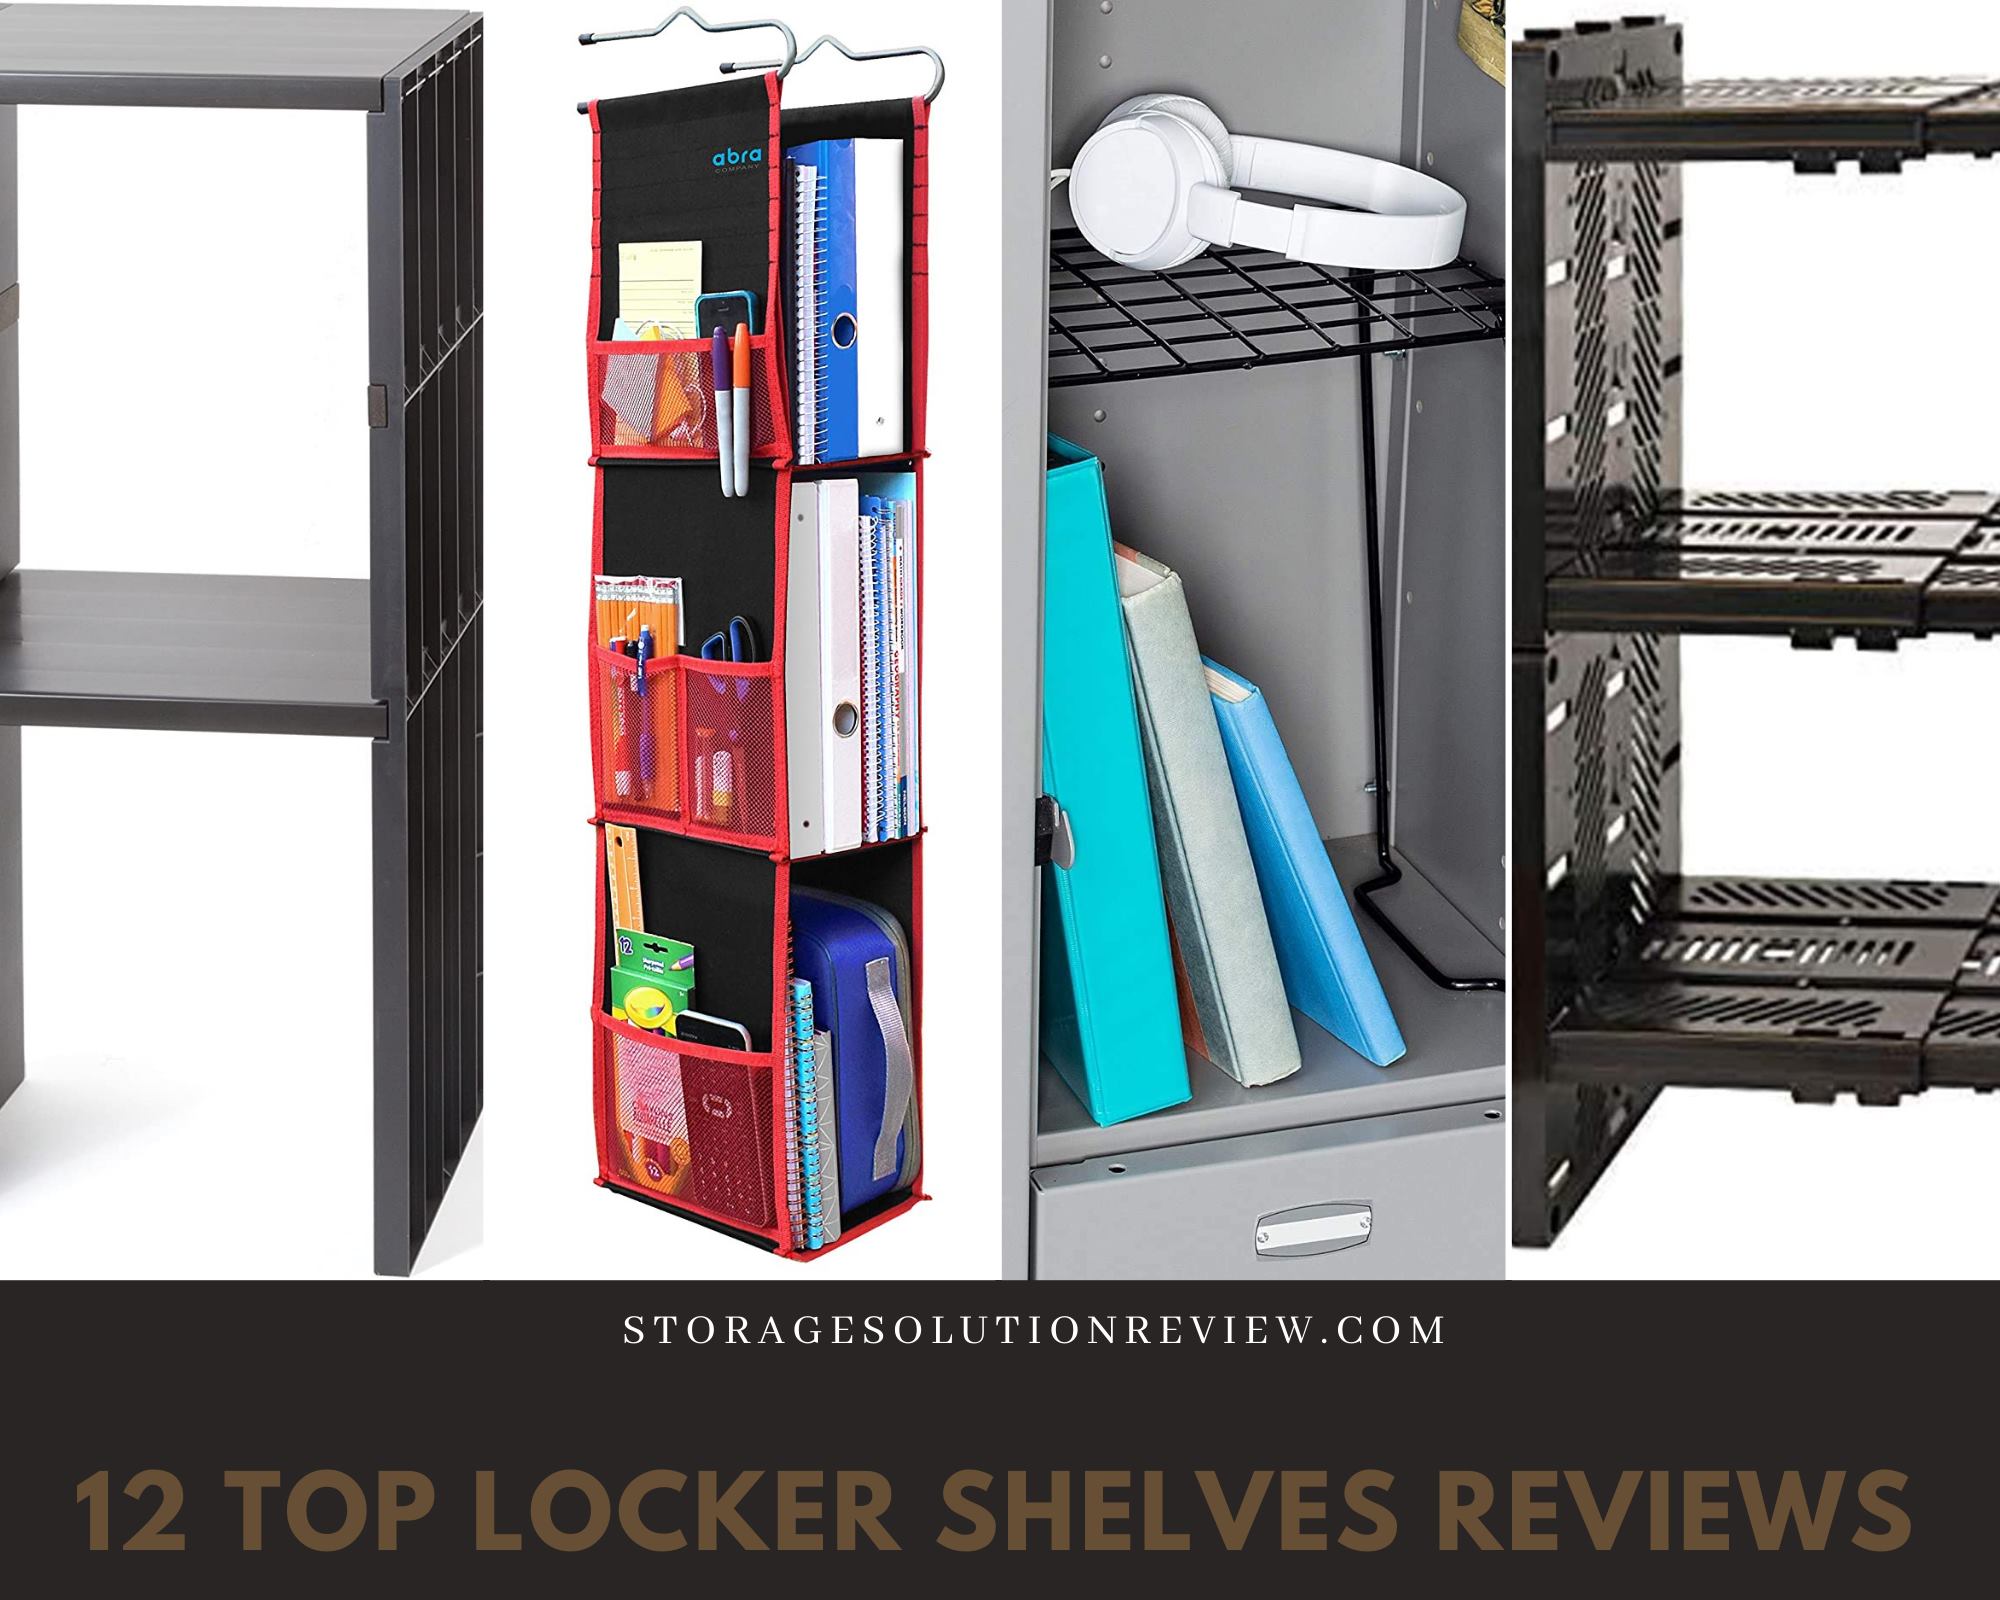 Best Locker Shelves Reviews